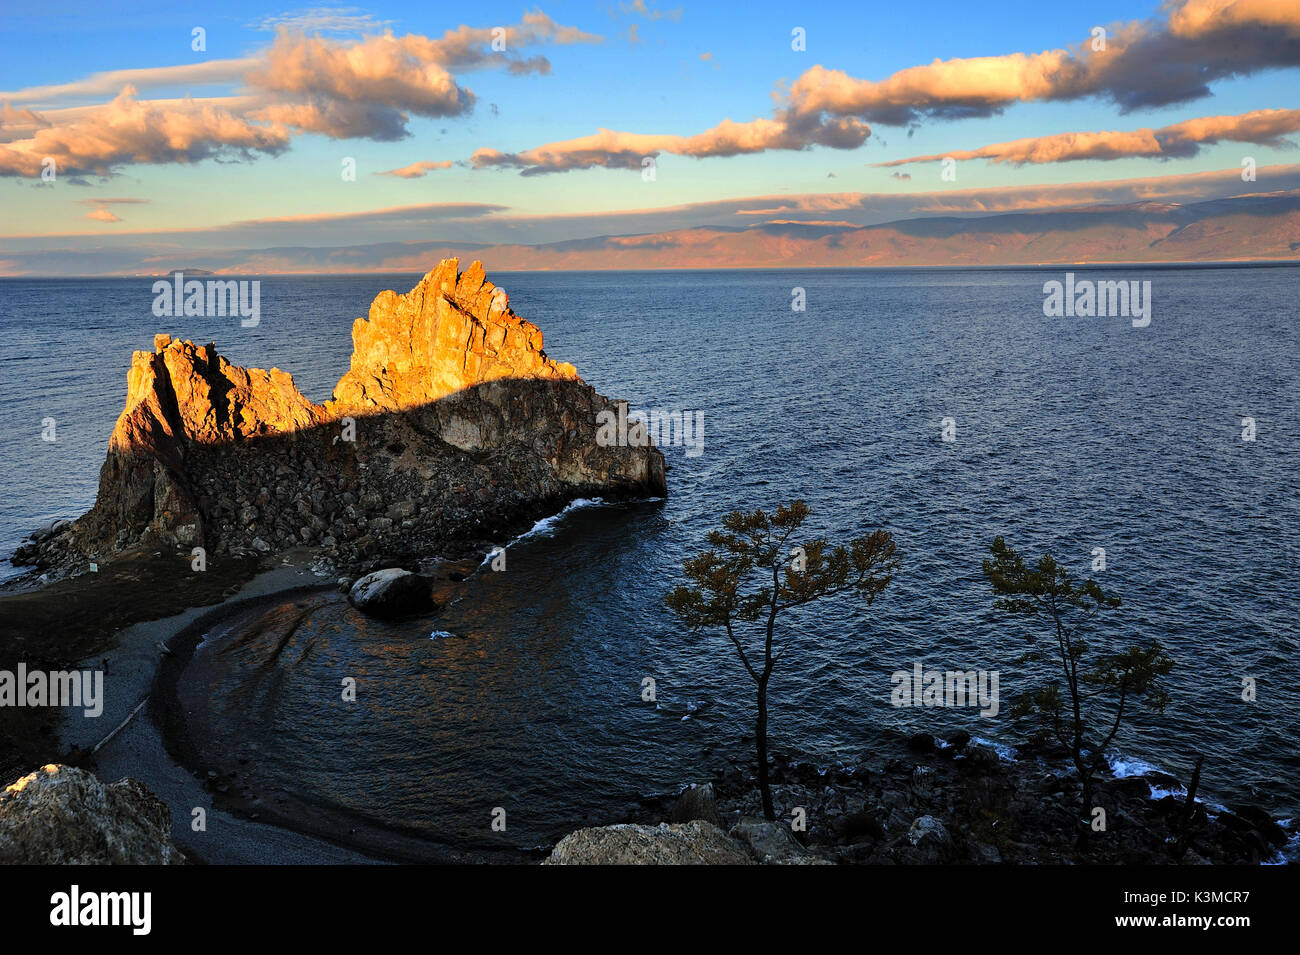 Rocher chamanka sur l'île d'Olkhon sur le lac Baïkal, en Russie. Banque D'Images